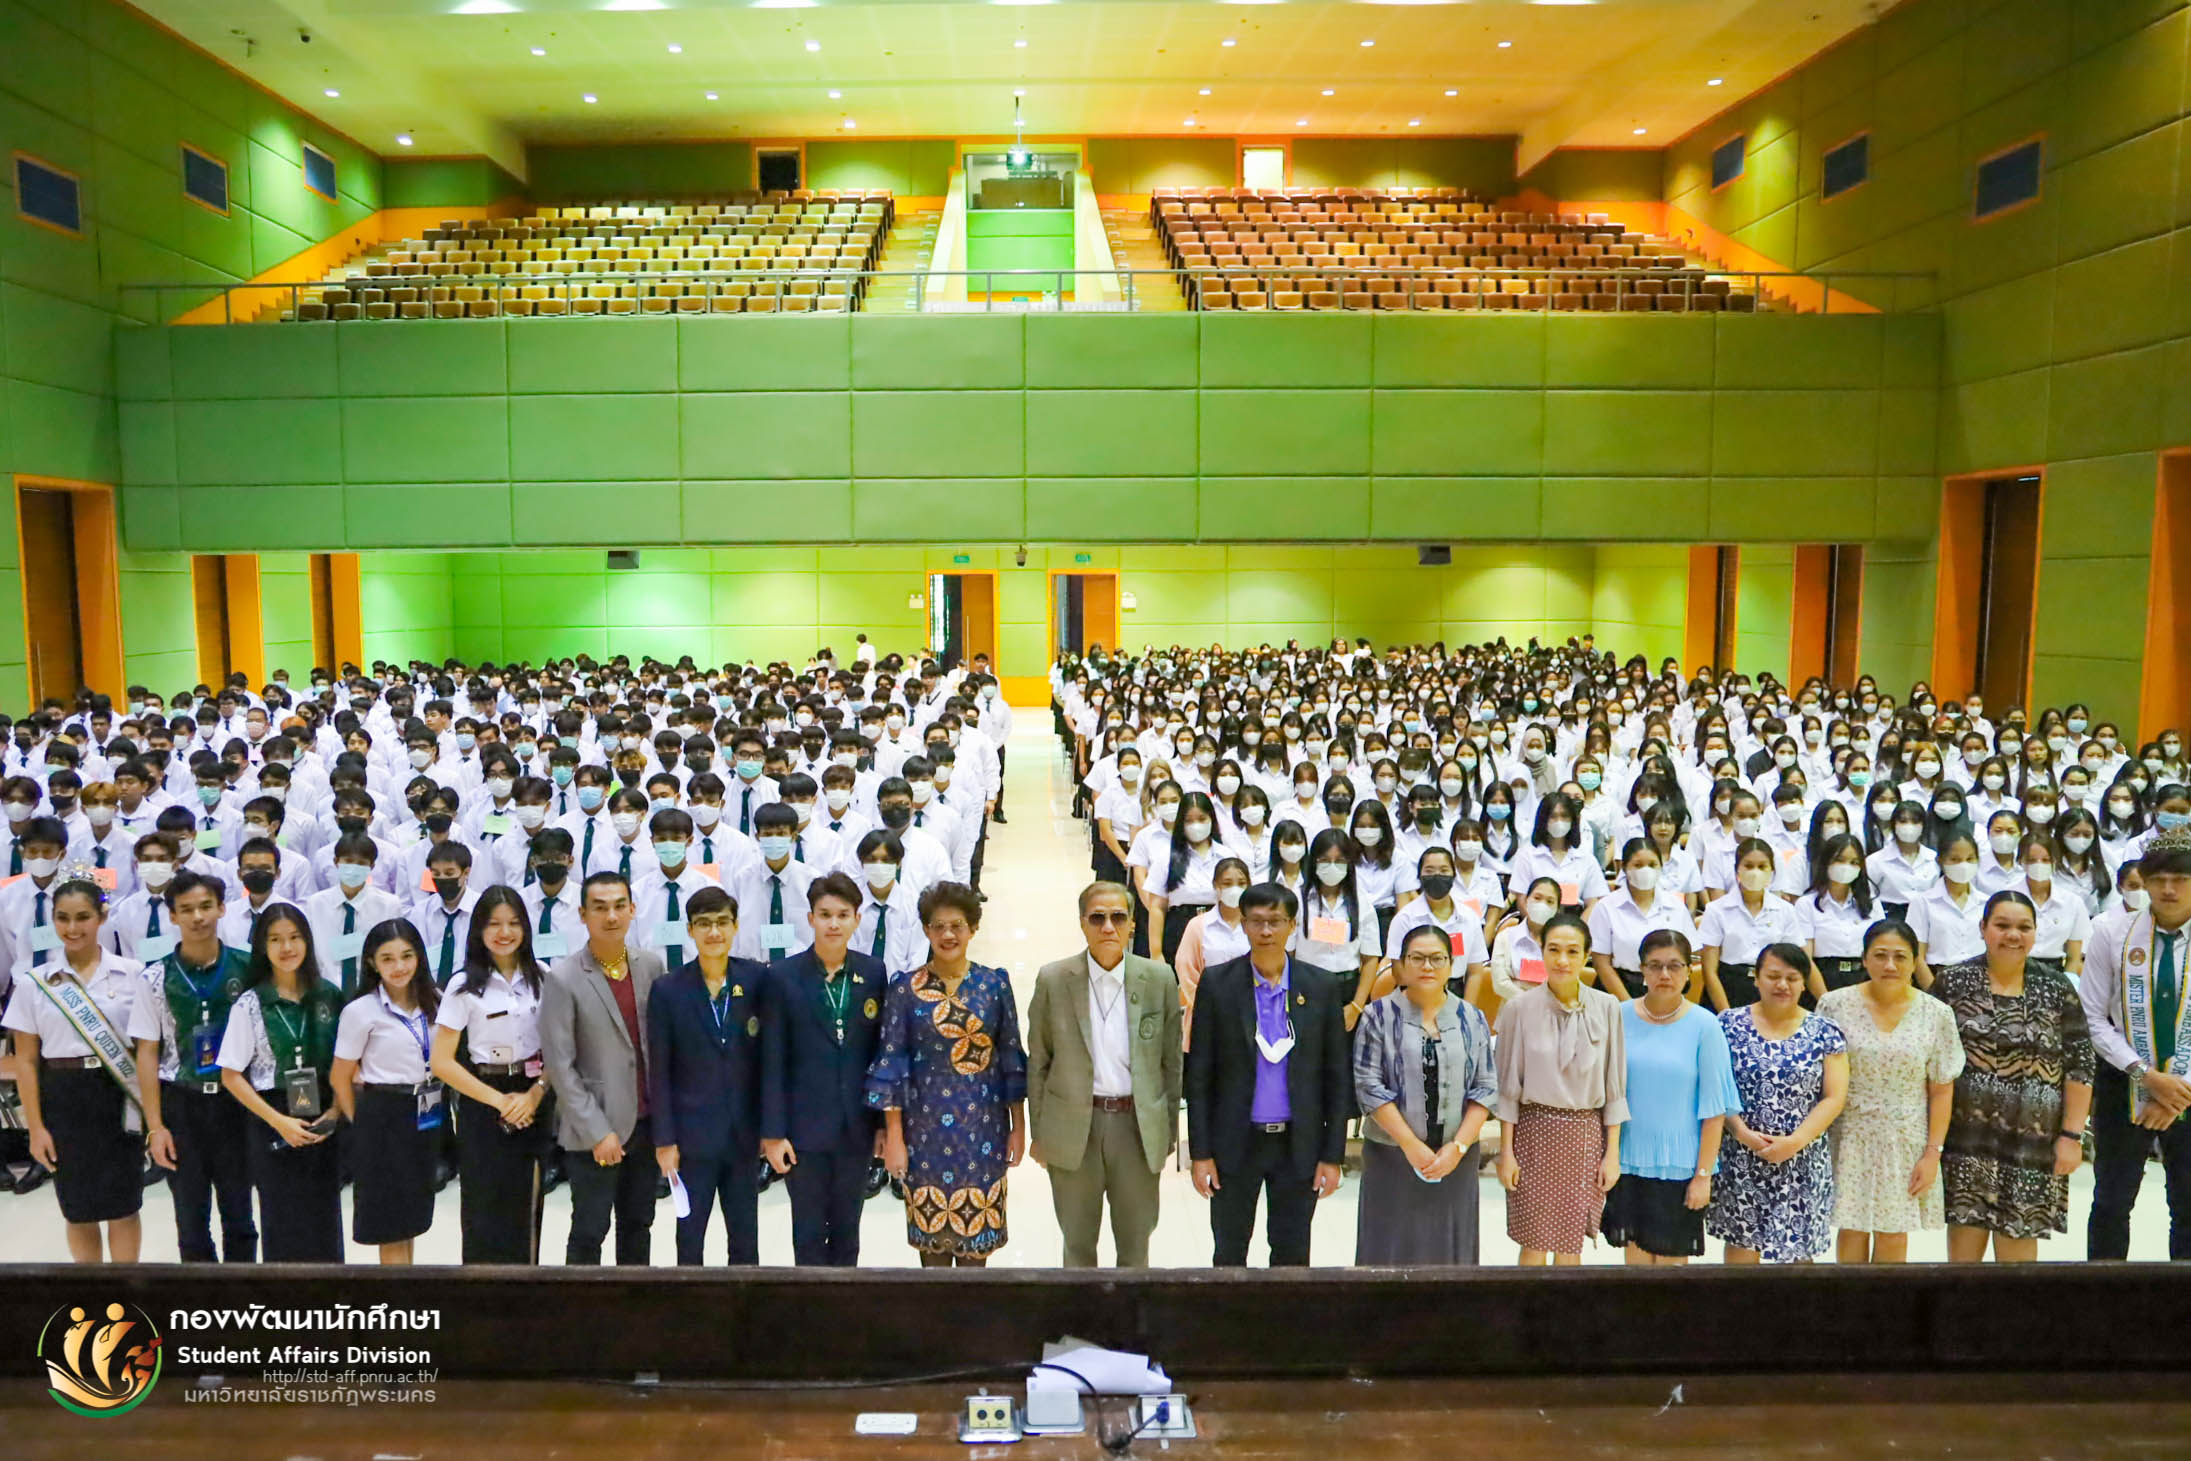 โครงการเตรียมความพร้อมสำหรับนักศึกษาใหม่ภาคปกติ ประจำปี 2566 ระหว่างวันที่ 19 - 23 มิถุนายน 2566 ณ มหาวิทยาลัยราชภัฏพระนคร (รอบเพิ่มเติม)